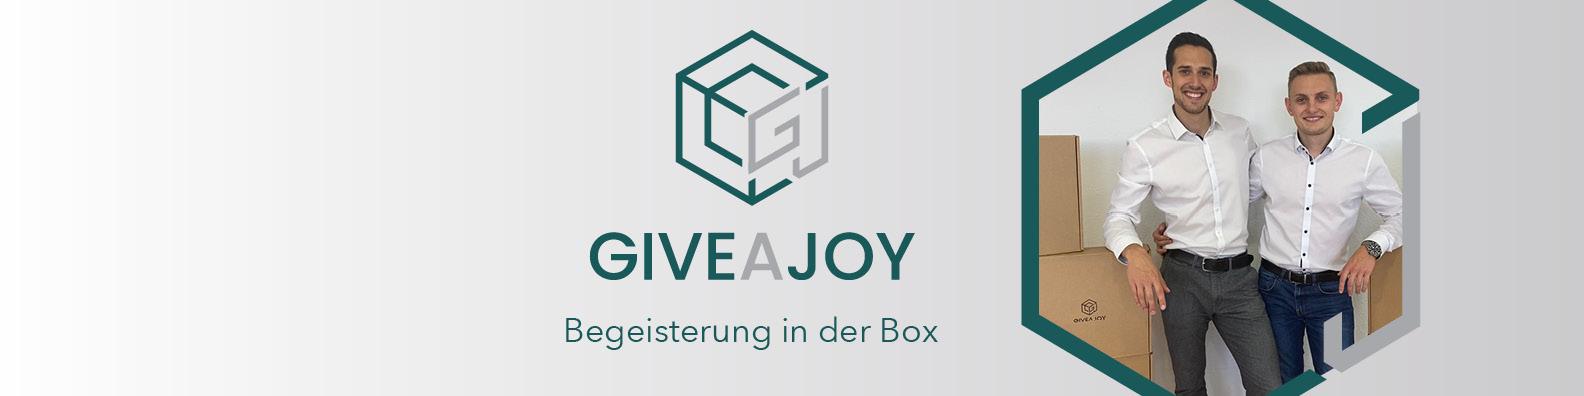 GIVEAJOY / startup von Berlin / Background